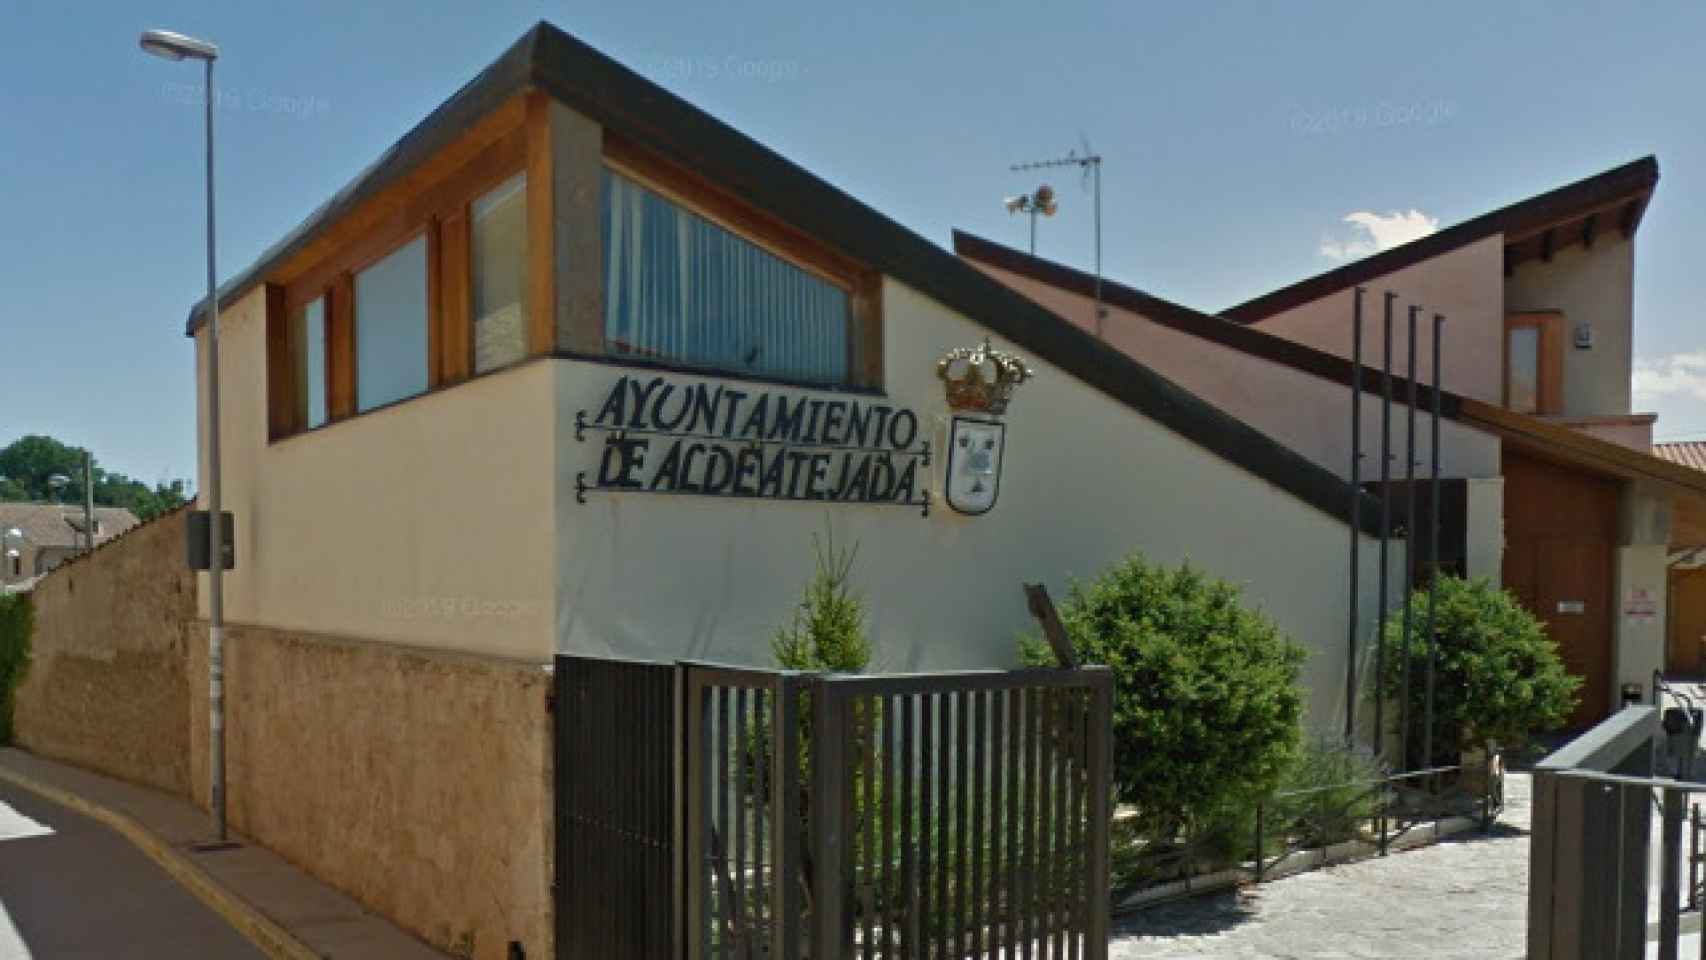 Ayuntamiento de Aldeatejada